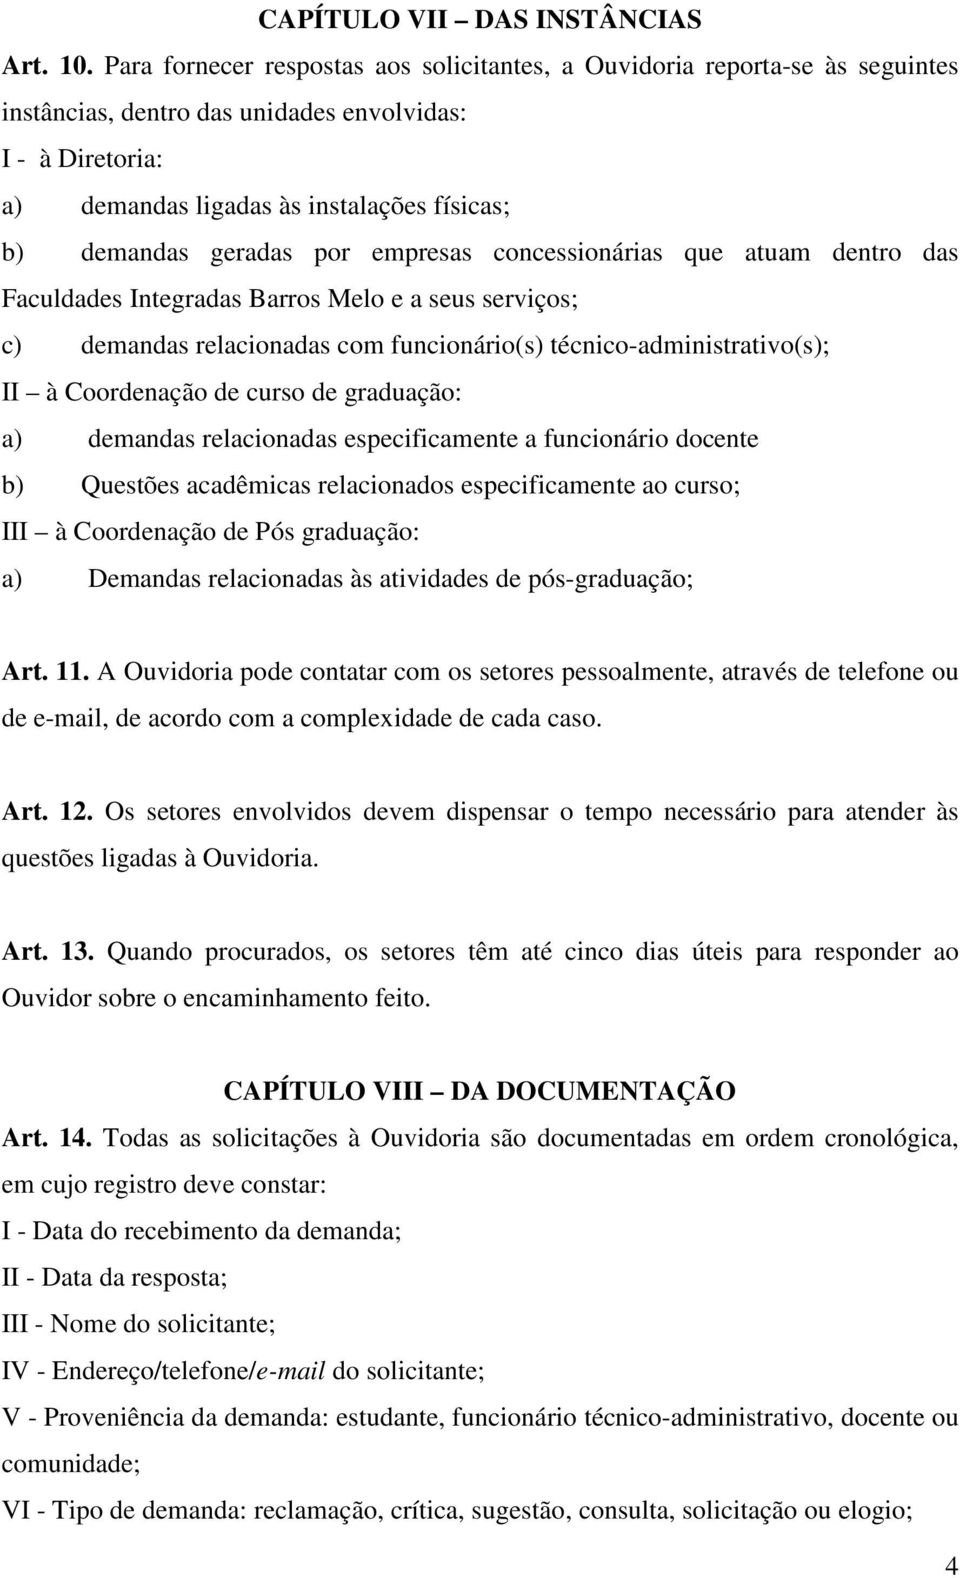 geradas por empresas concessionárias que atuam dentro das Faculdades Integradas Barros Melo e a seus serviços; c) demandas relacionadas com funcionário(s) técnico-administrativo(s); II à Coordenação